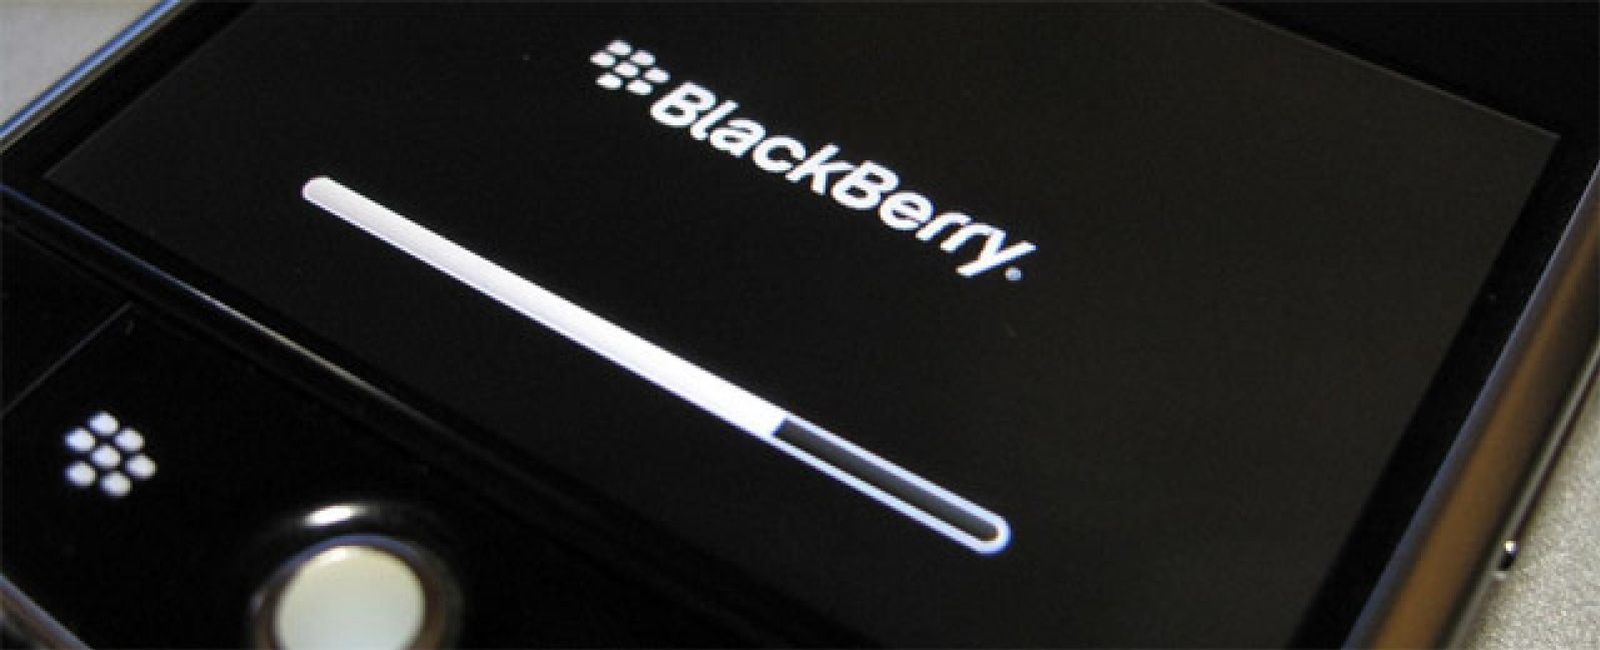 Foto: BlackBerry, renovarse o morir